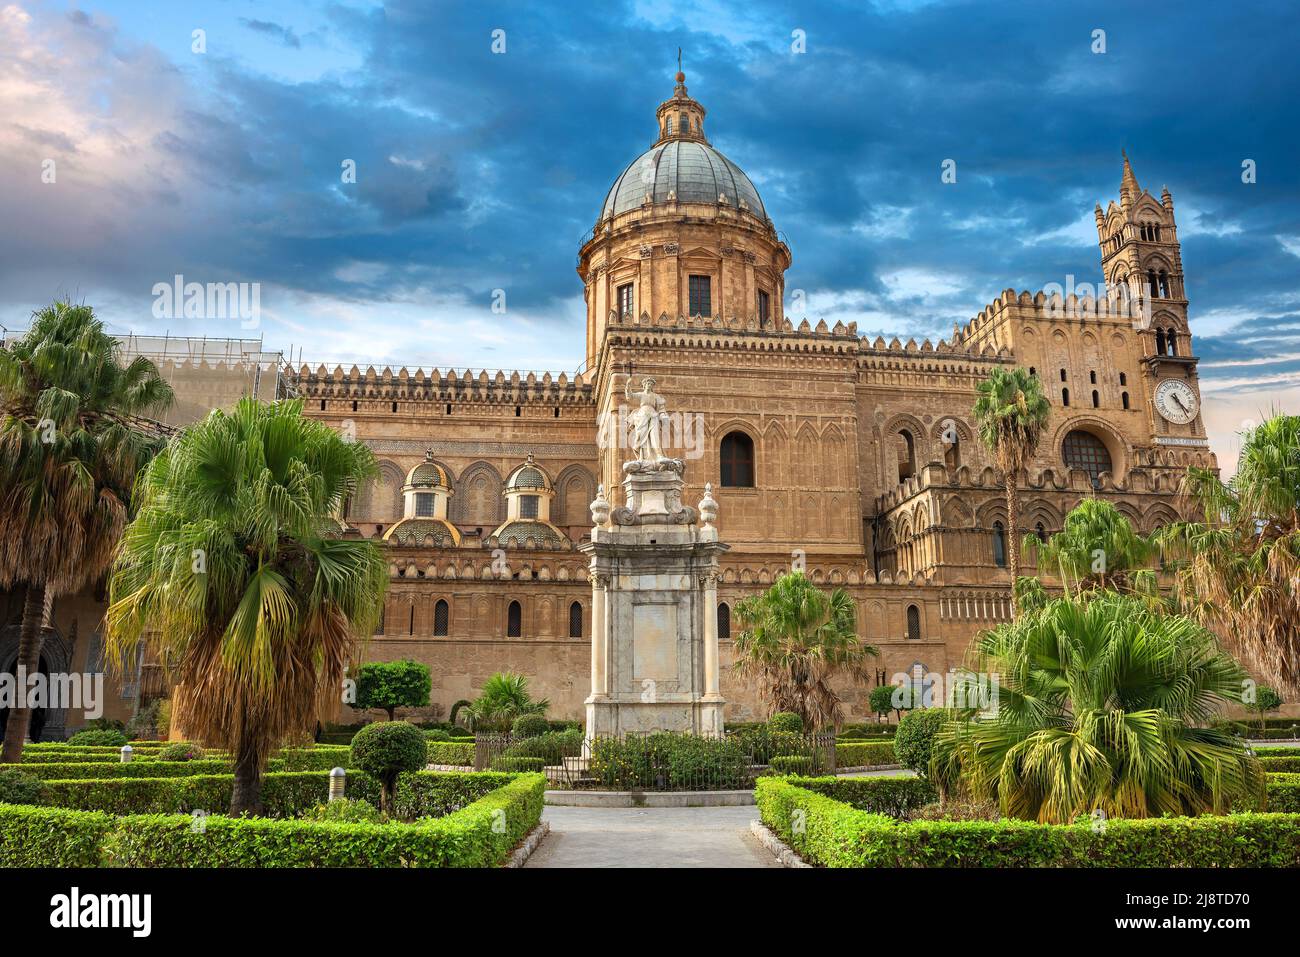 Vista de la catedral de Palermo (Duomo di Palermo). Palermo, Sicilia, Italia Foto de stock